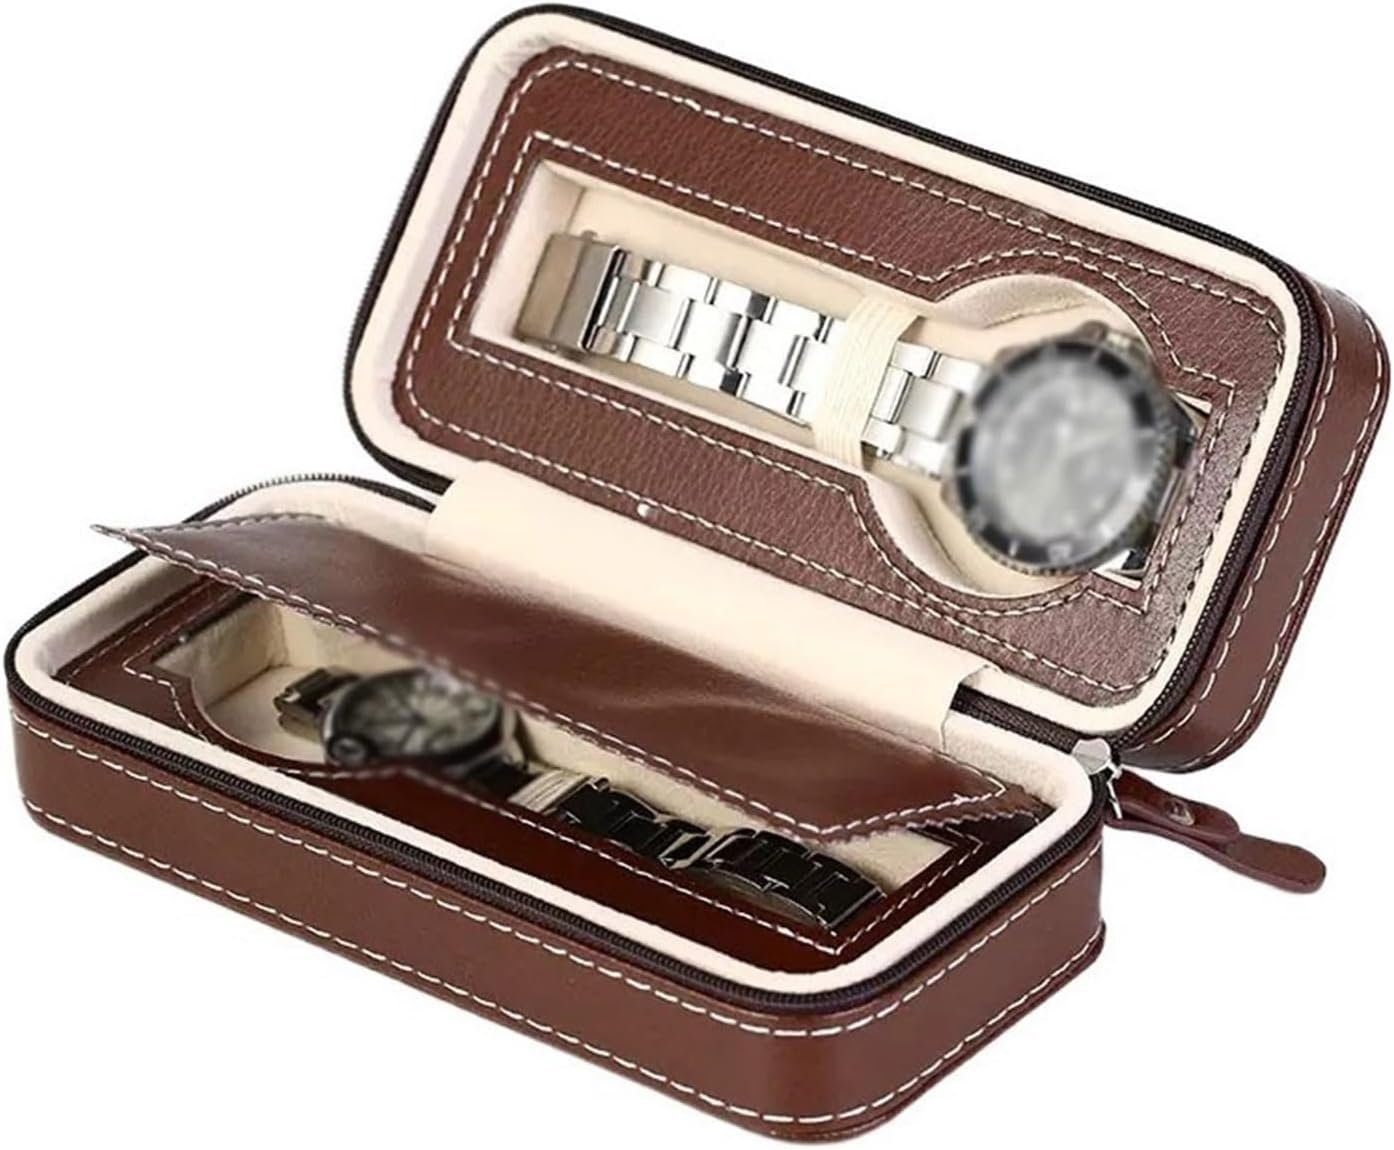 LENBEST Uhrenbox Uhrenbox Uhrenbox - 2 Uhrenpositionen, schön gestaltet (1 St), Hochwertige Schmuckbox, tragbar und geräumig (Uhren nicht enthalten)